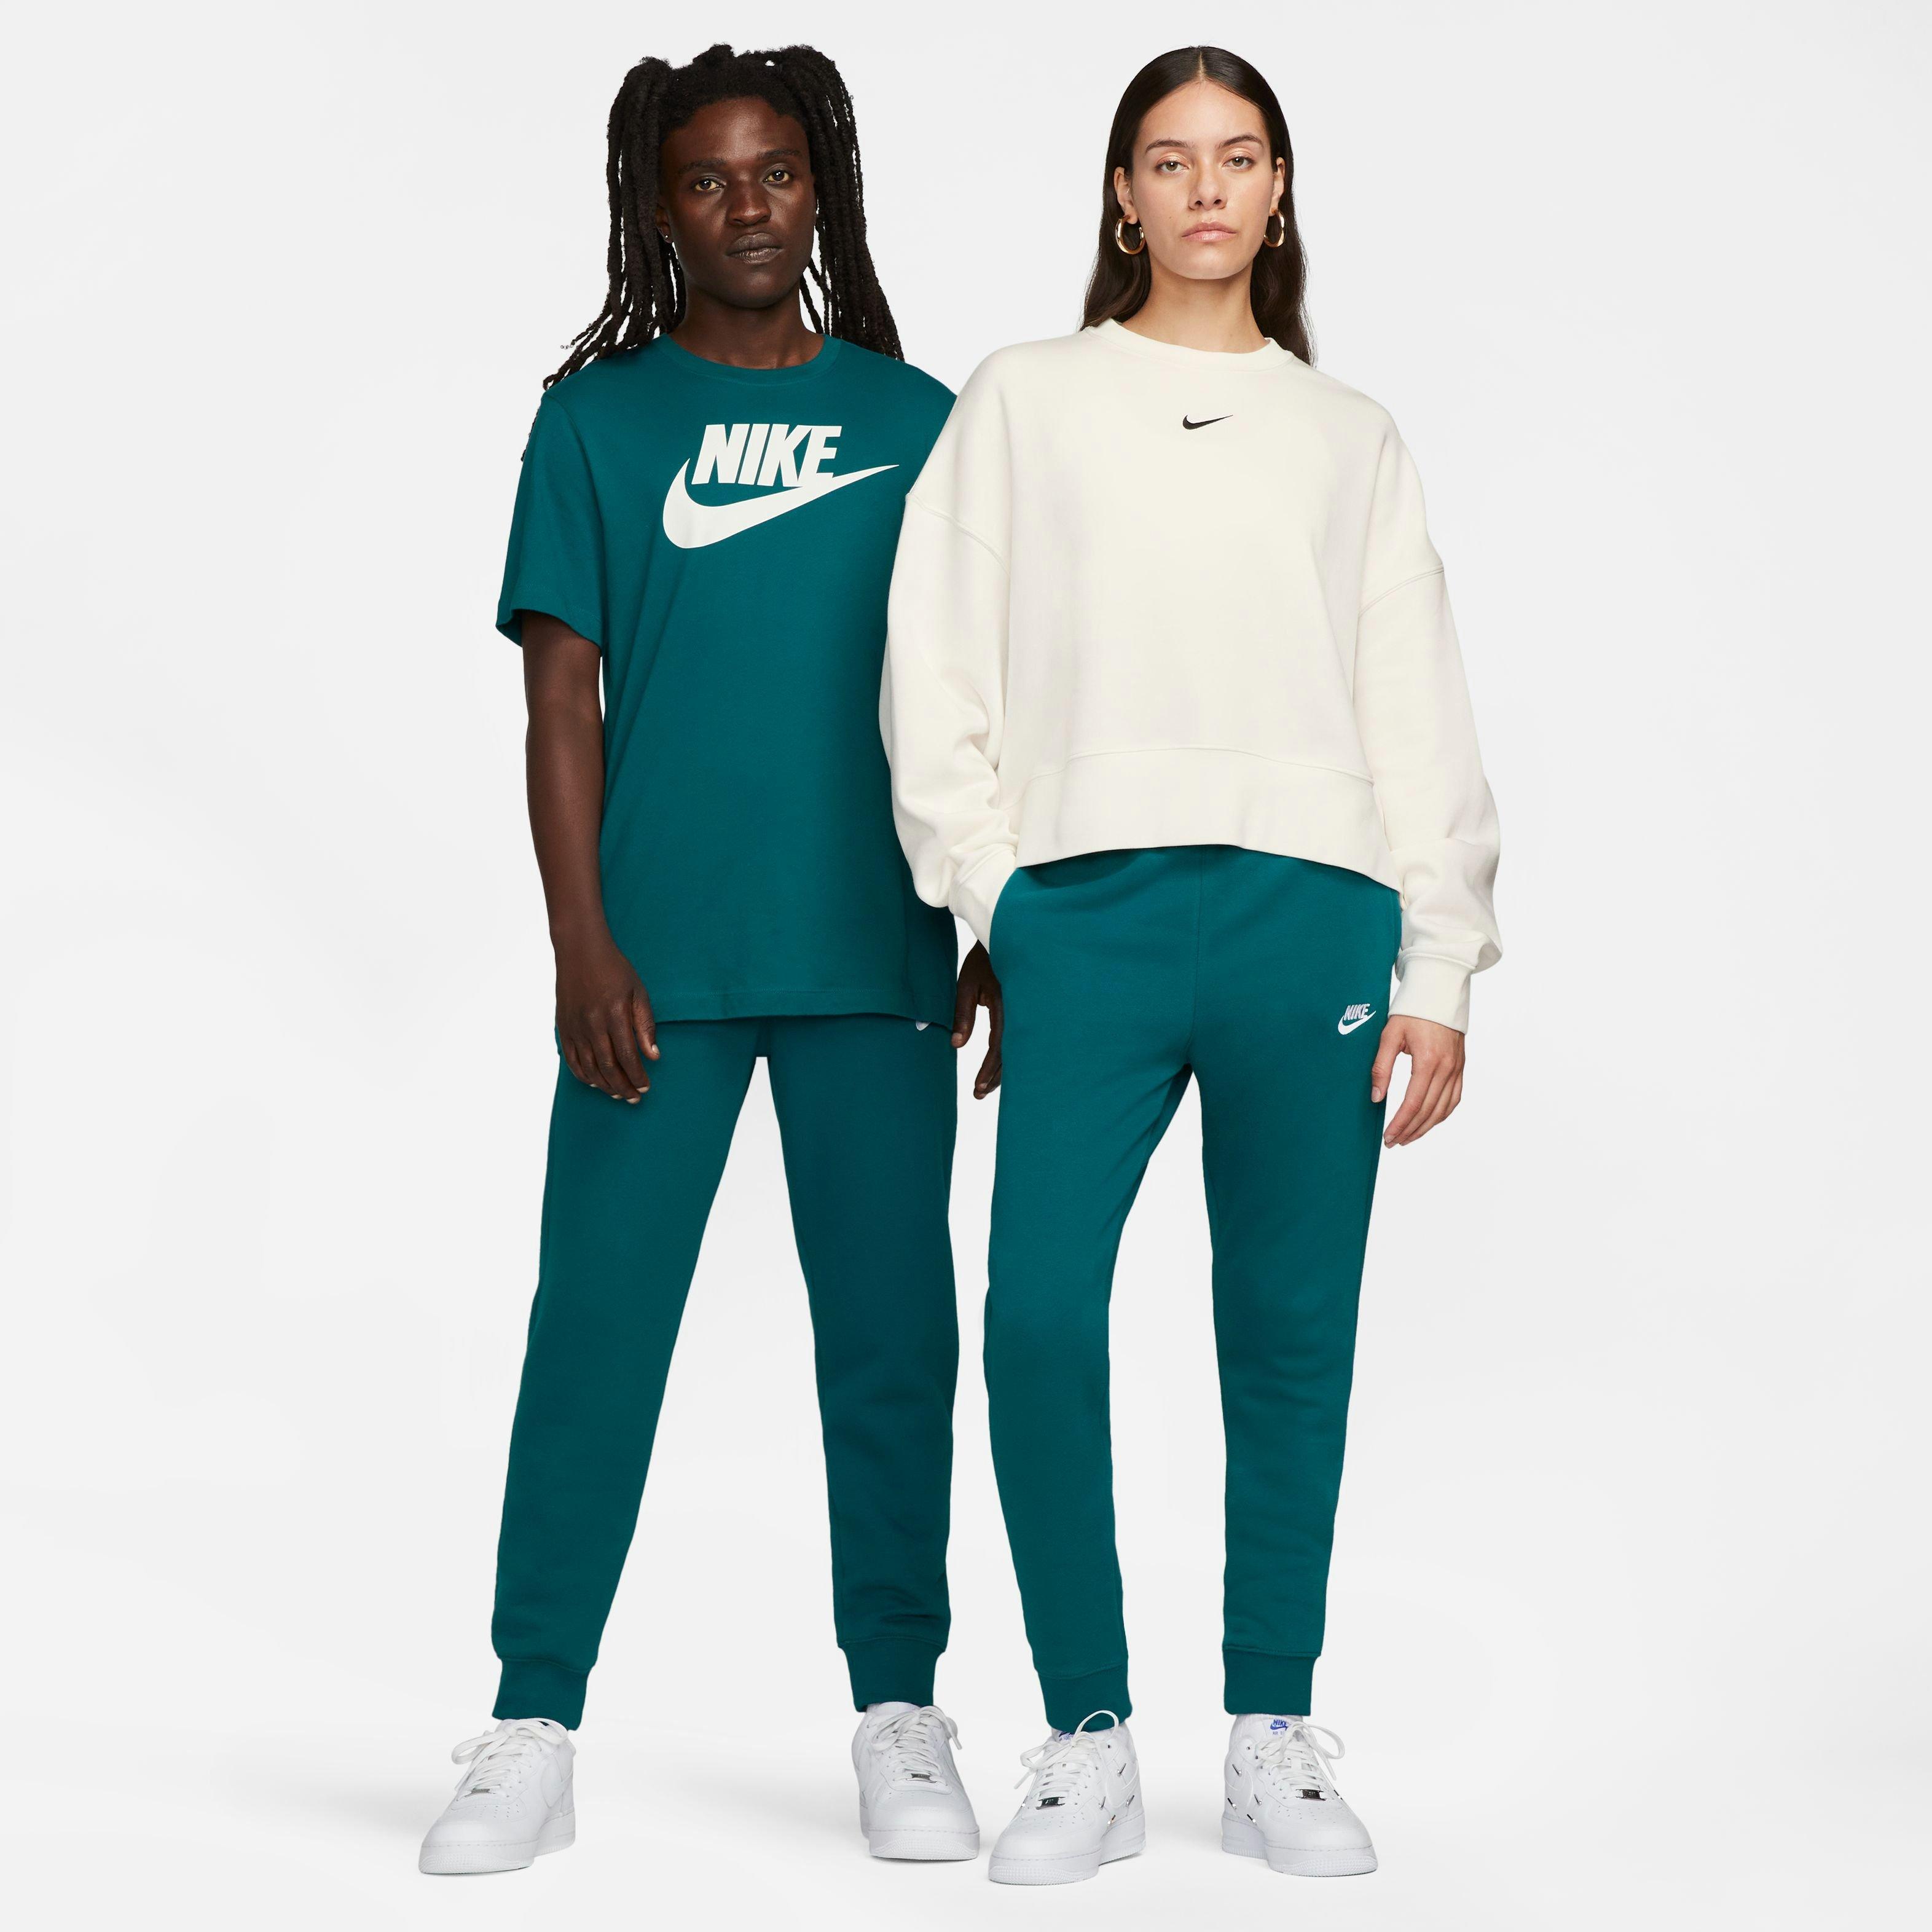 Nike Men's Sportswear Club Grey Fleece Joggers - Hibbett